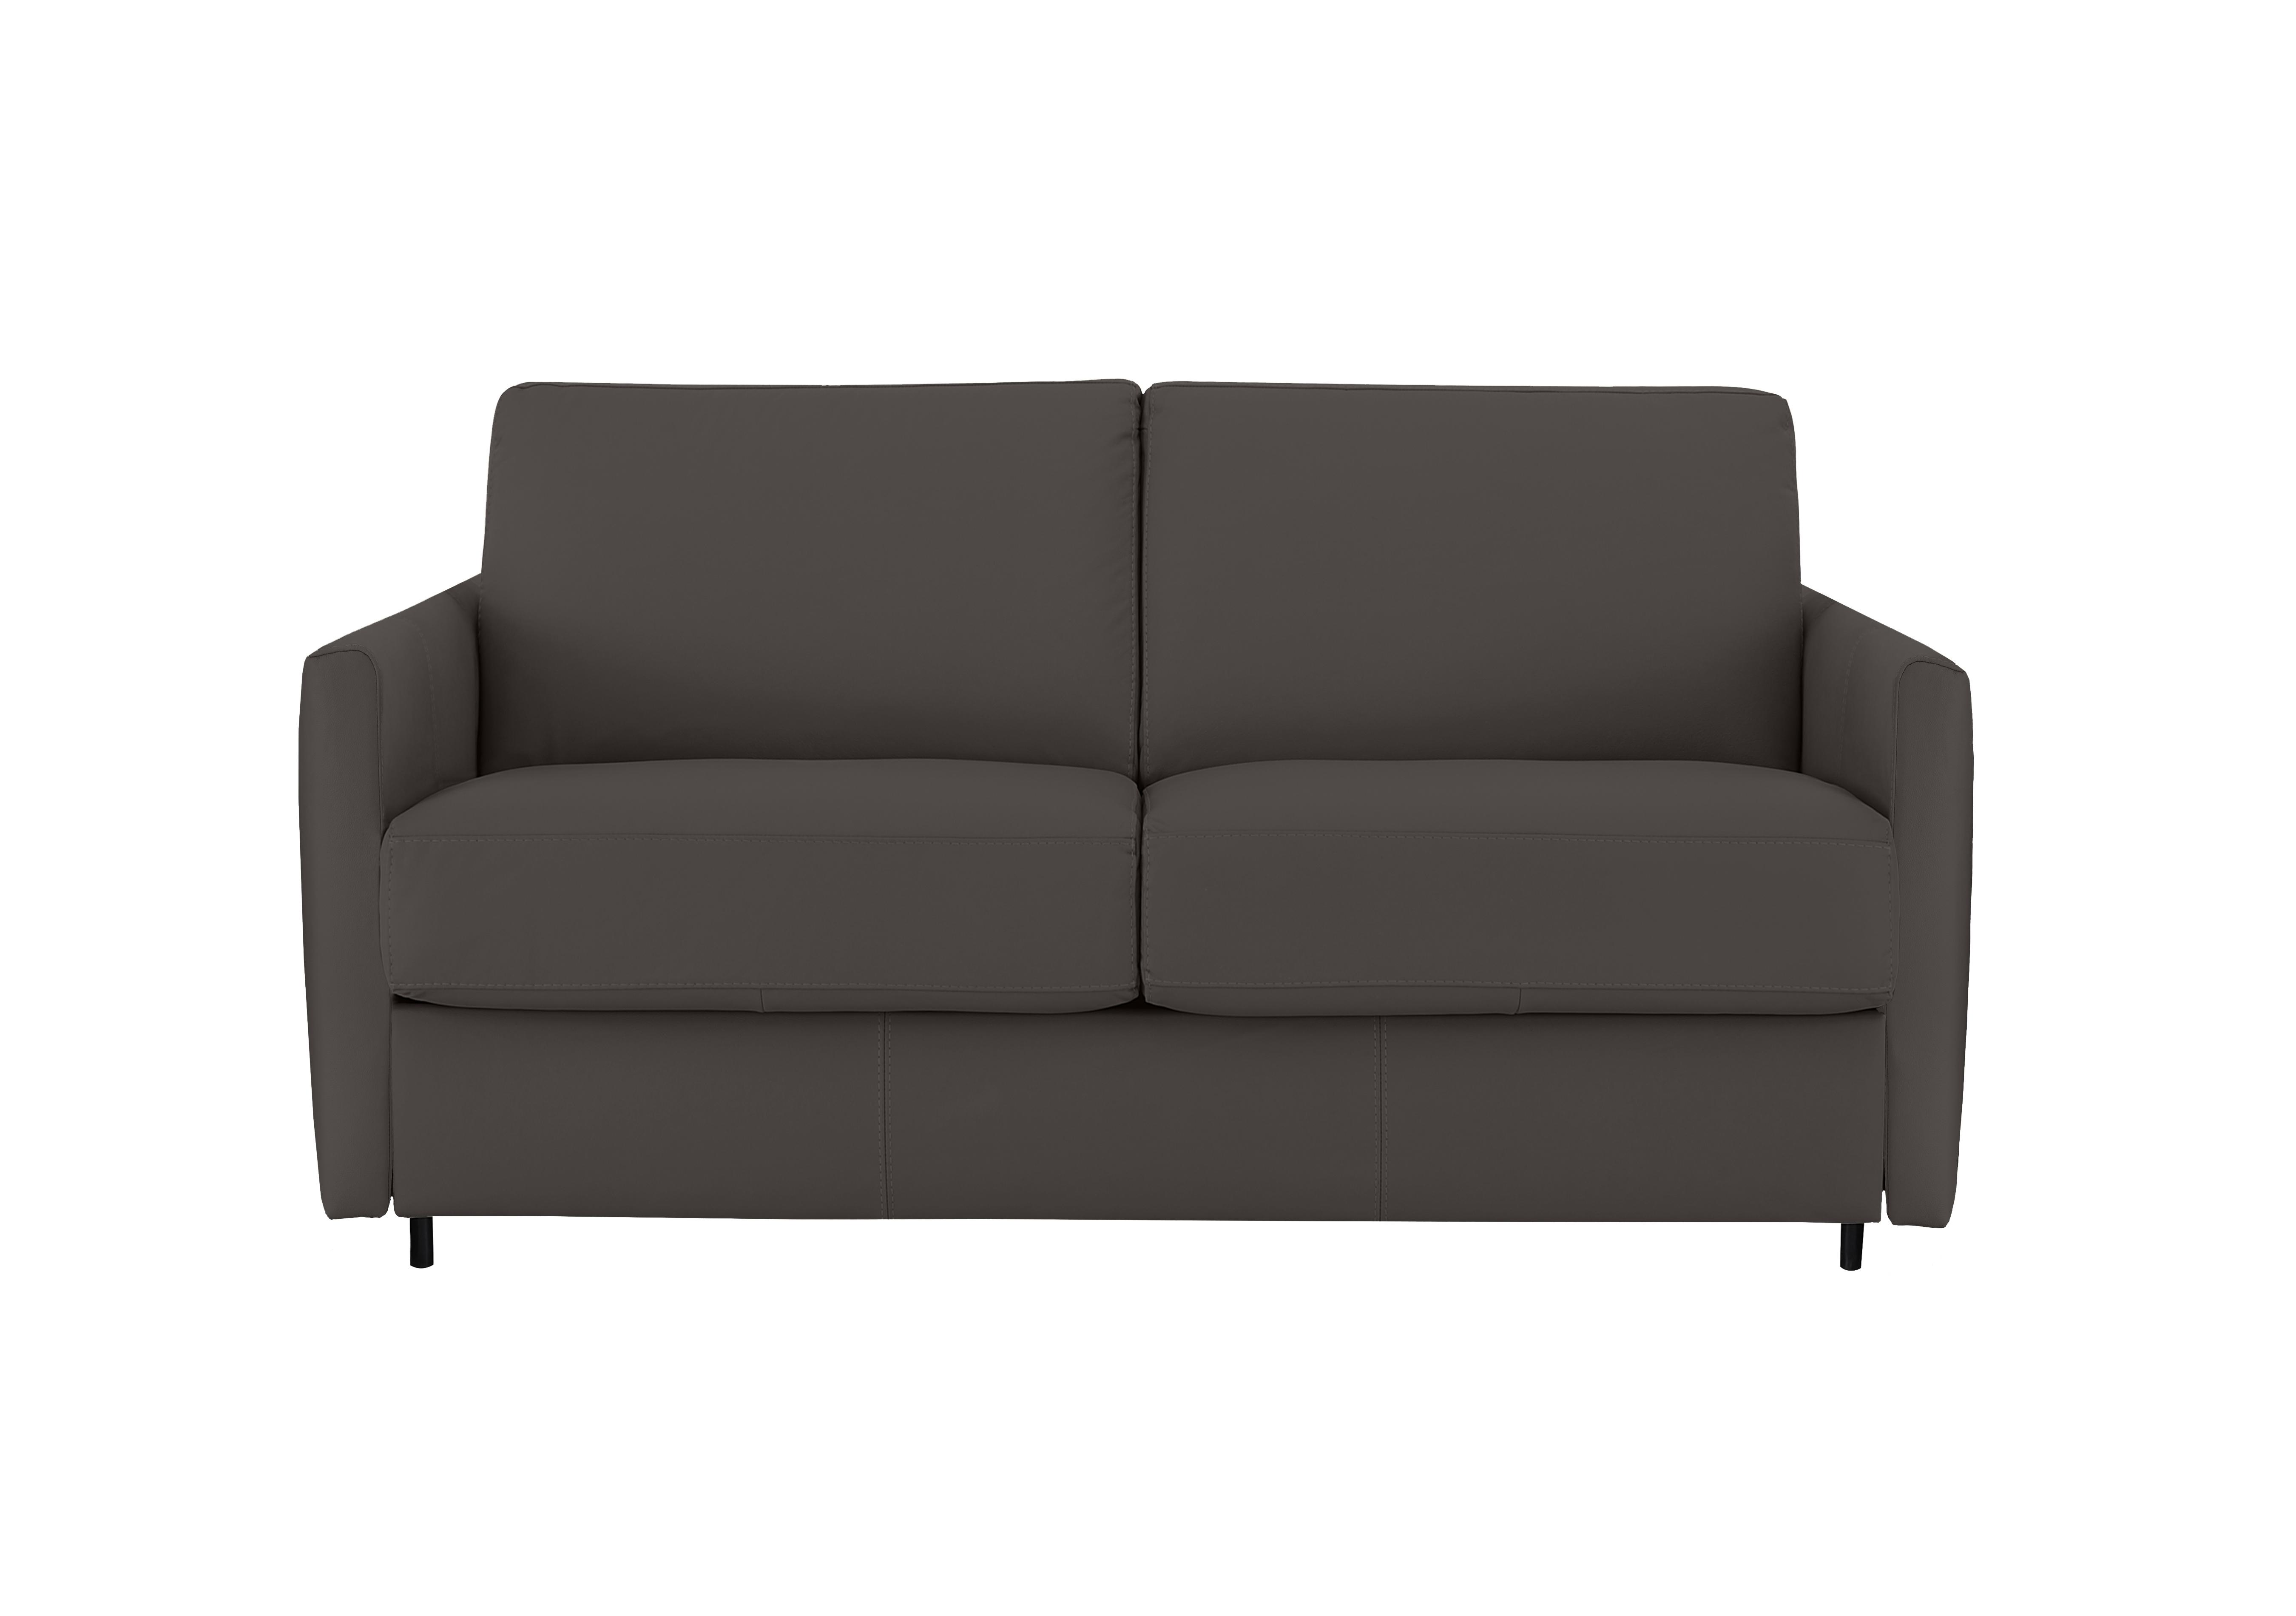 Alcova 2 Seater Leather Sofa Bed with Slim Arms in Torello Grigio Scuro 327 on Furniture Village